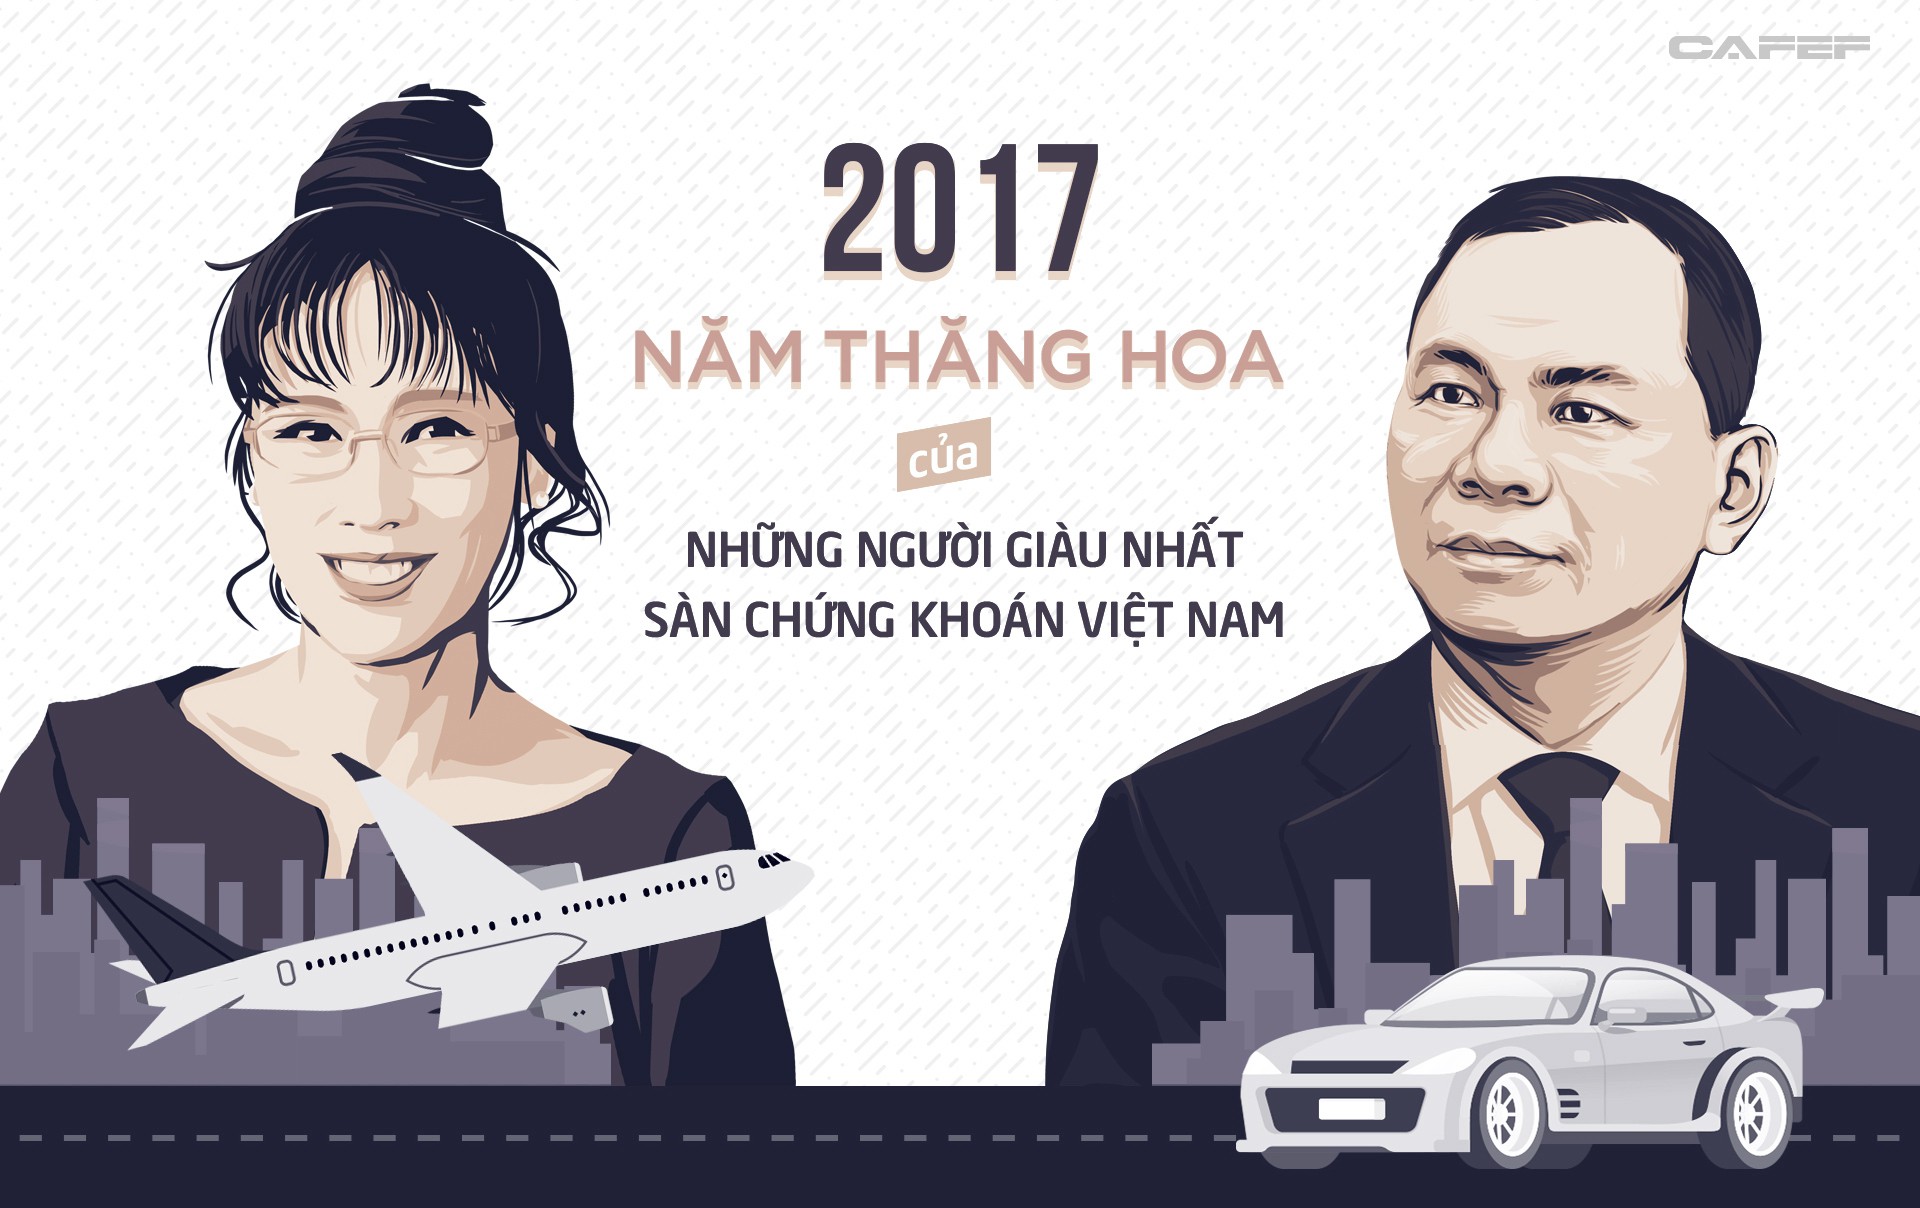 2017 Năm thăng hoa của những người giàu nhất sàn chứng khoán Việt